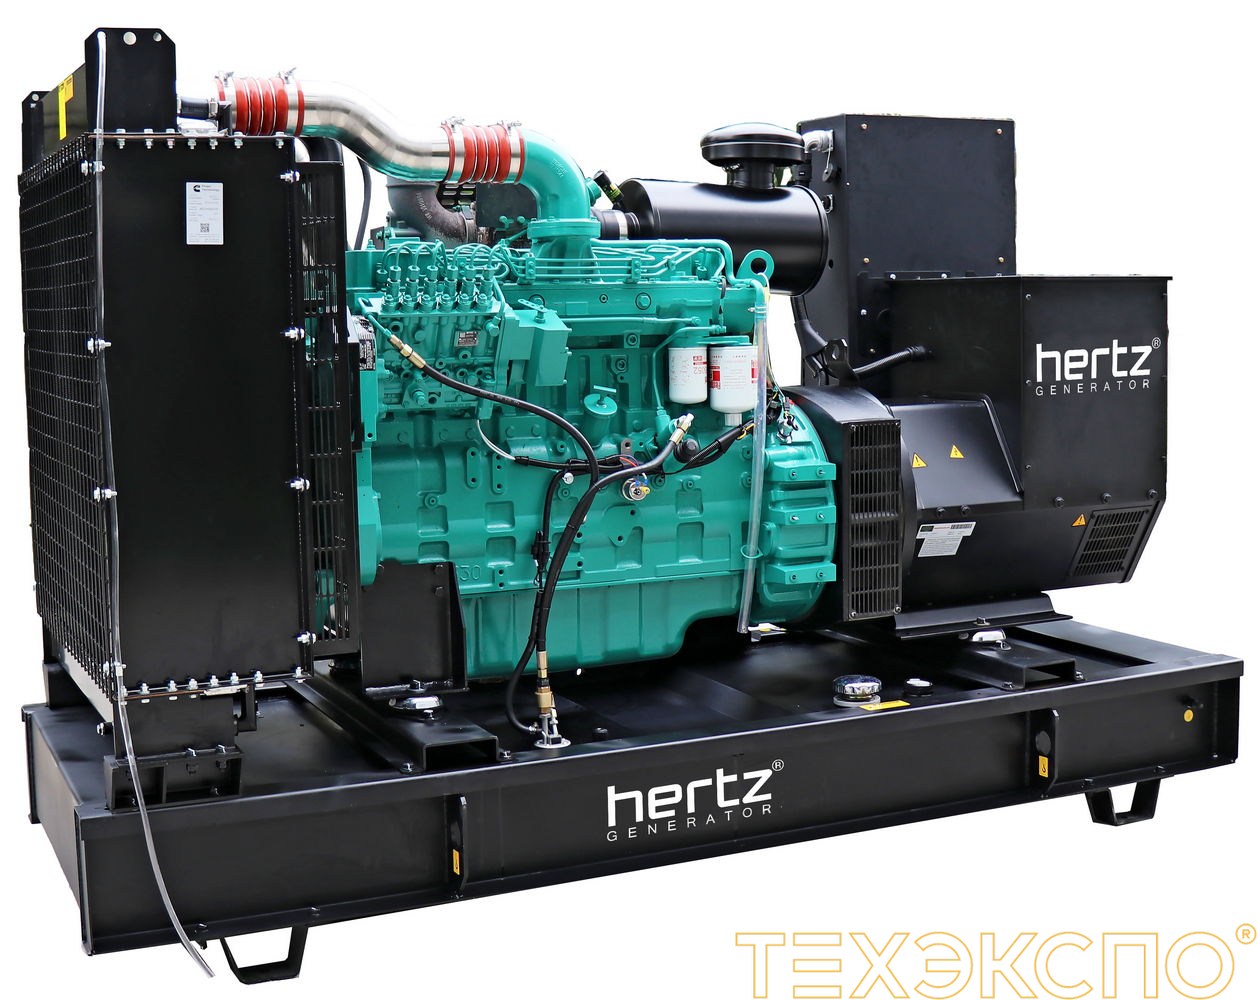 HERTZ HG500 CL - ДЭС 360 кВт в Санкт-Петербурге за 5 483 170 рублей | Дизельная электростанция в Техэкспо